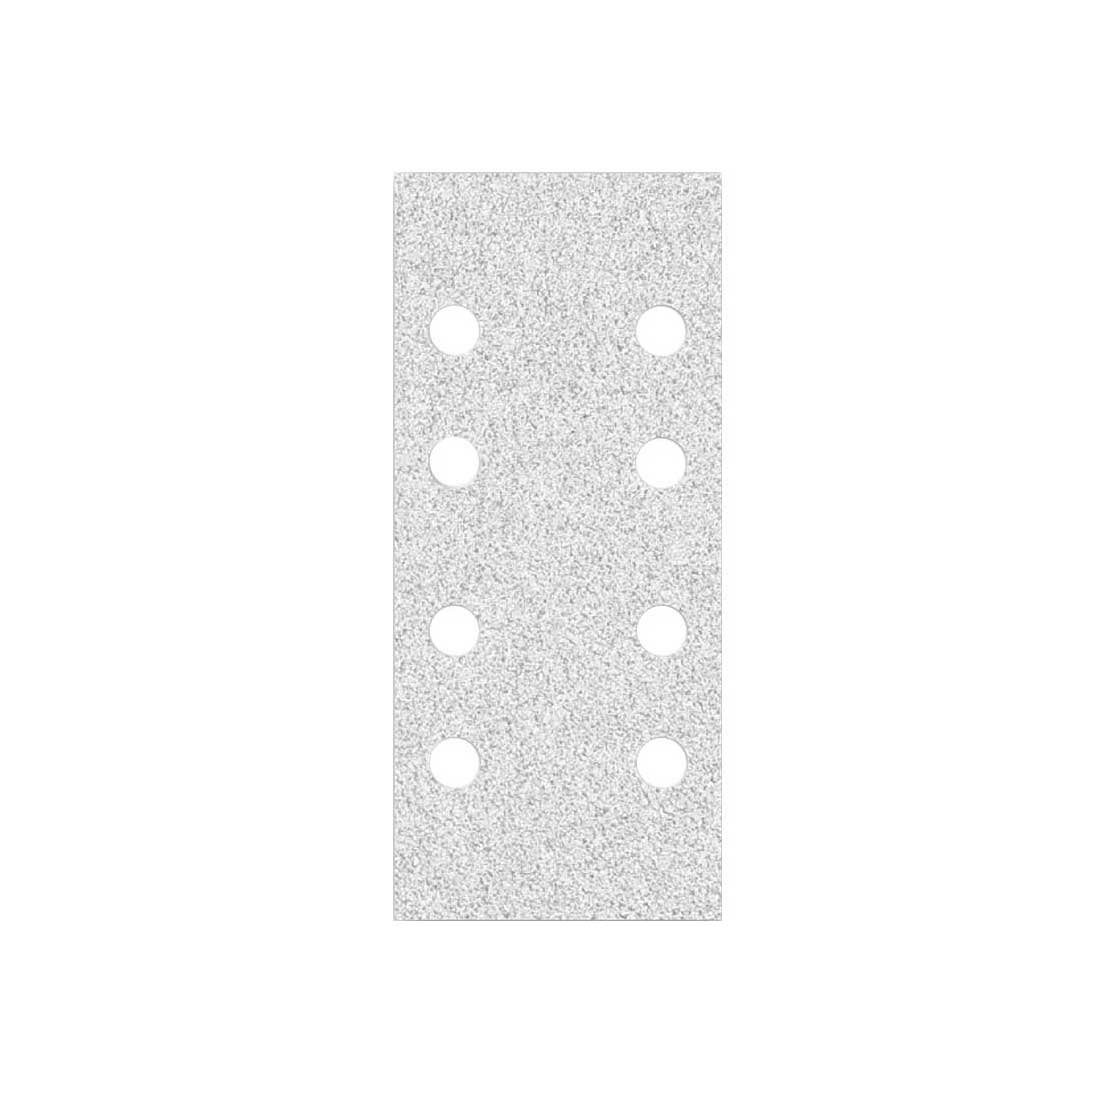 MioTools Schleifpapier 186 x 93 mm 8-Loch Klett-Schleifblätter für Schwingschleifer, Normalkorund, 50 Stk., K120